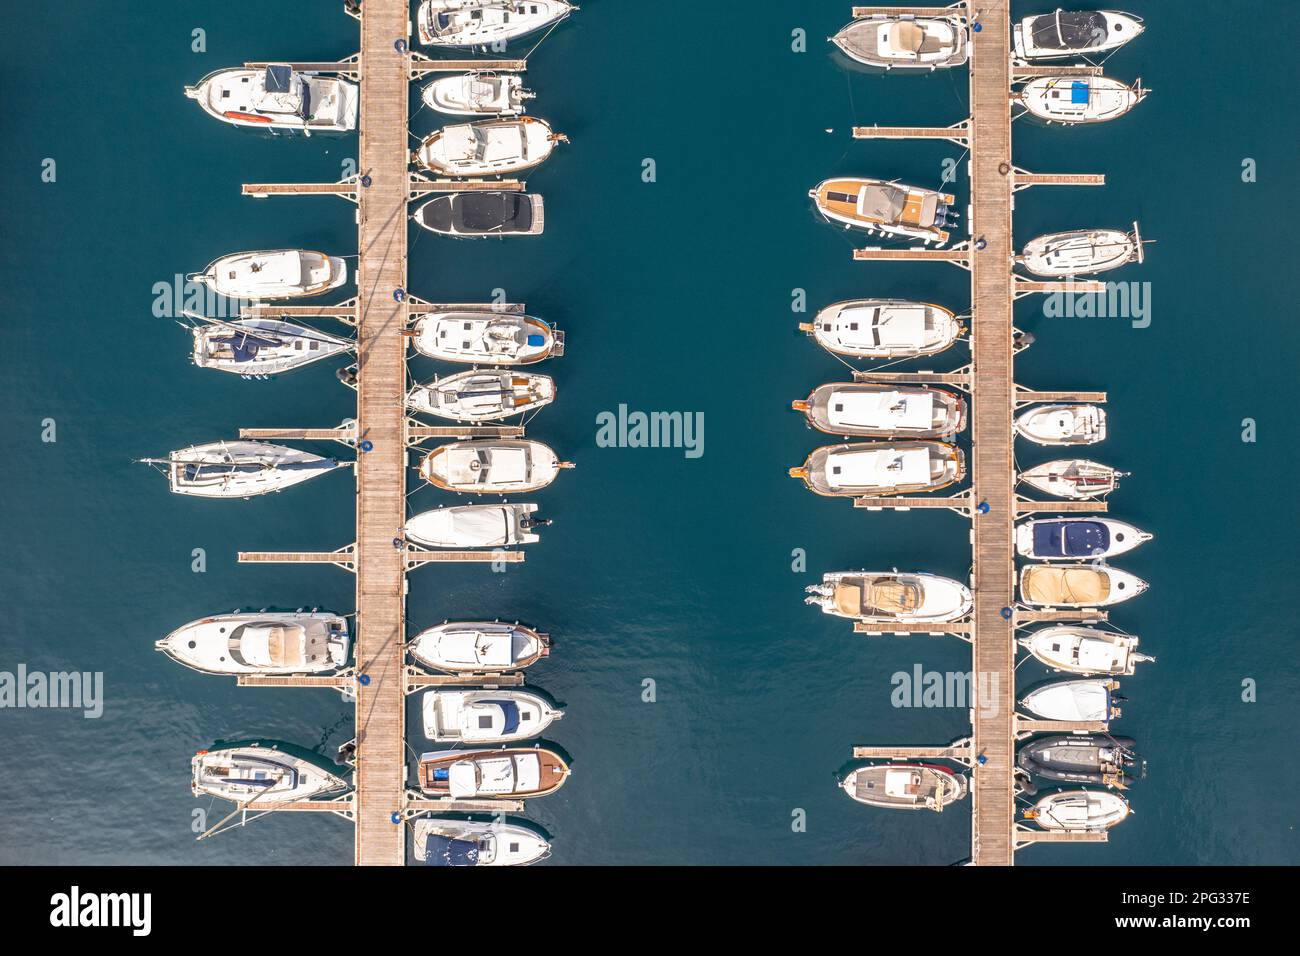 Yachten, Segel- und Motorboote in einem Hafen in Spanien. Uber das türkisblaue Wasser des Mediteranischen Meeres. Draufsicht von oben. Stockfoto